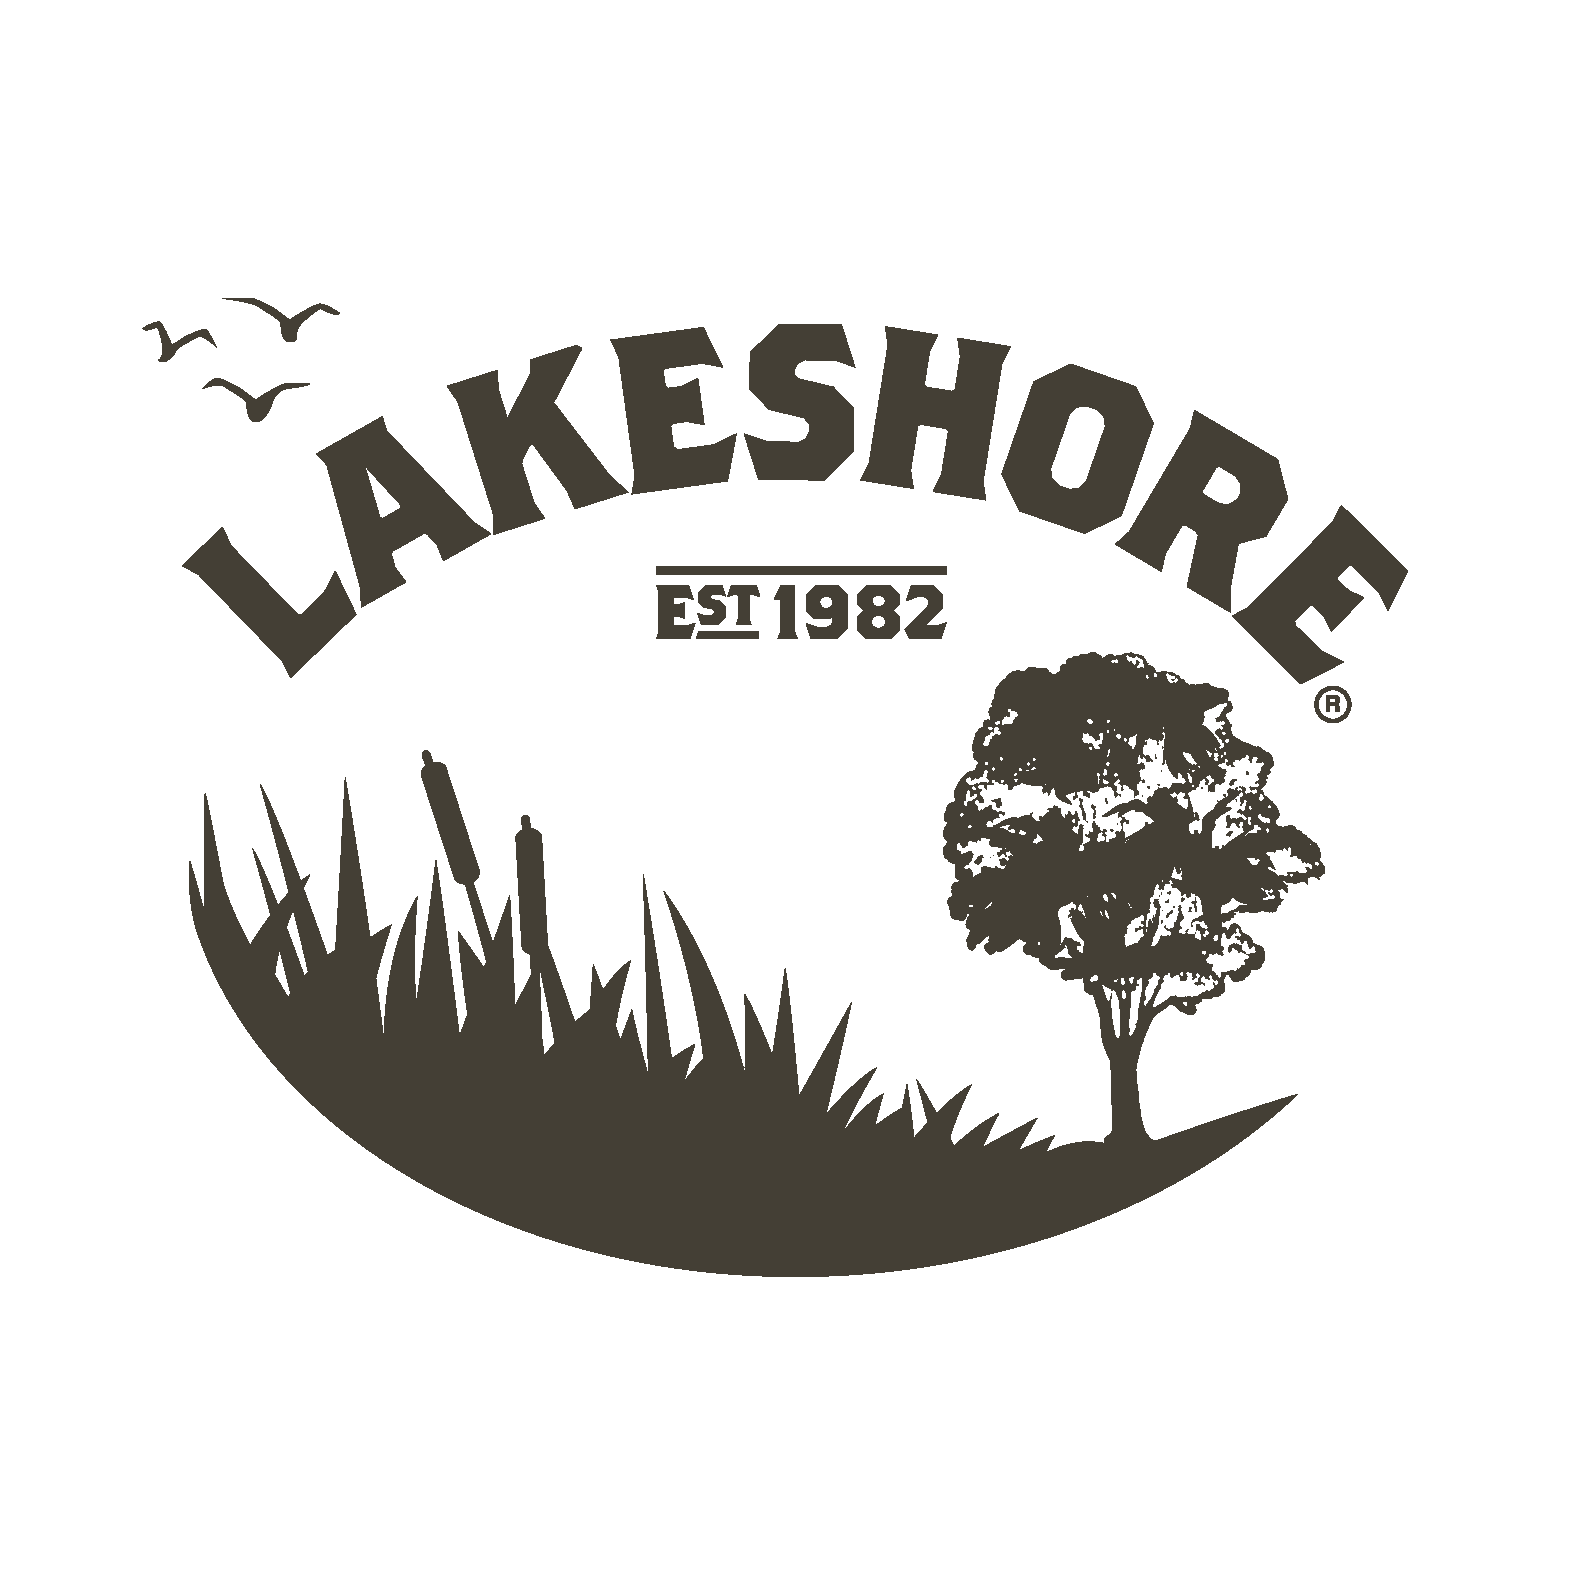 Lakeshore